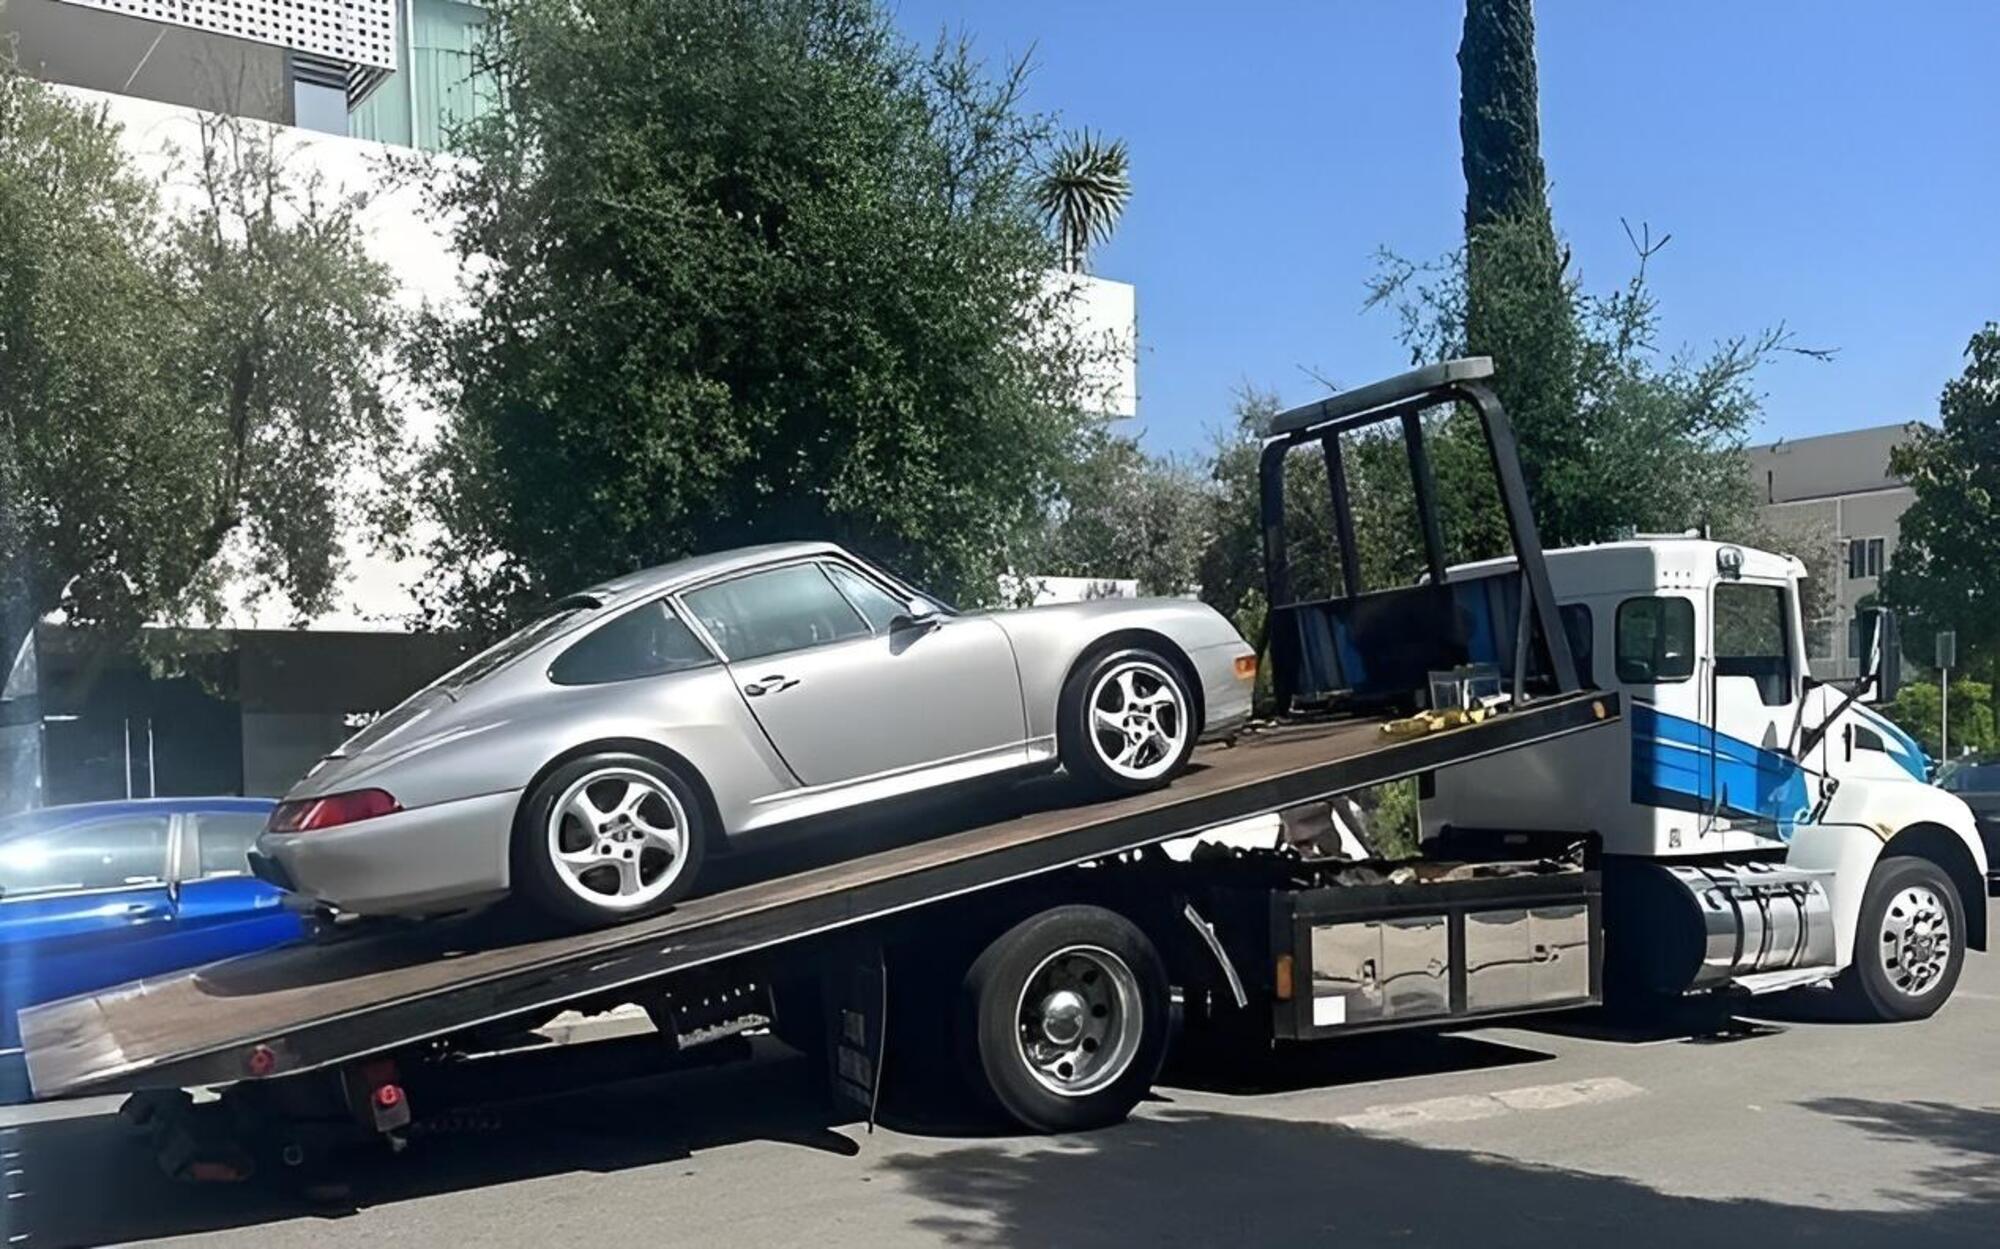 La Porsche 911 Carrera S di Bianca Censori portata via dal carroattrezzi